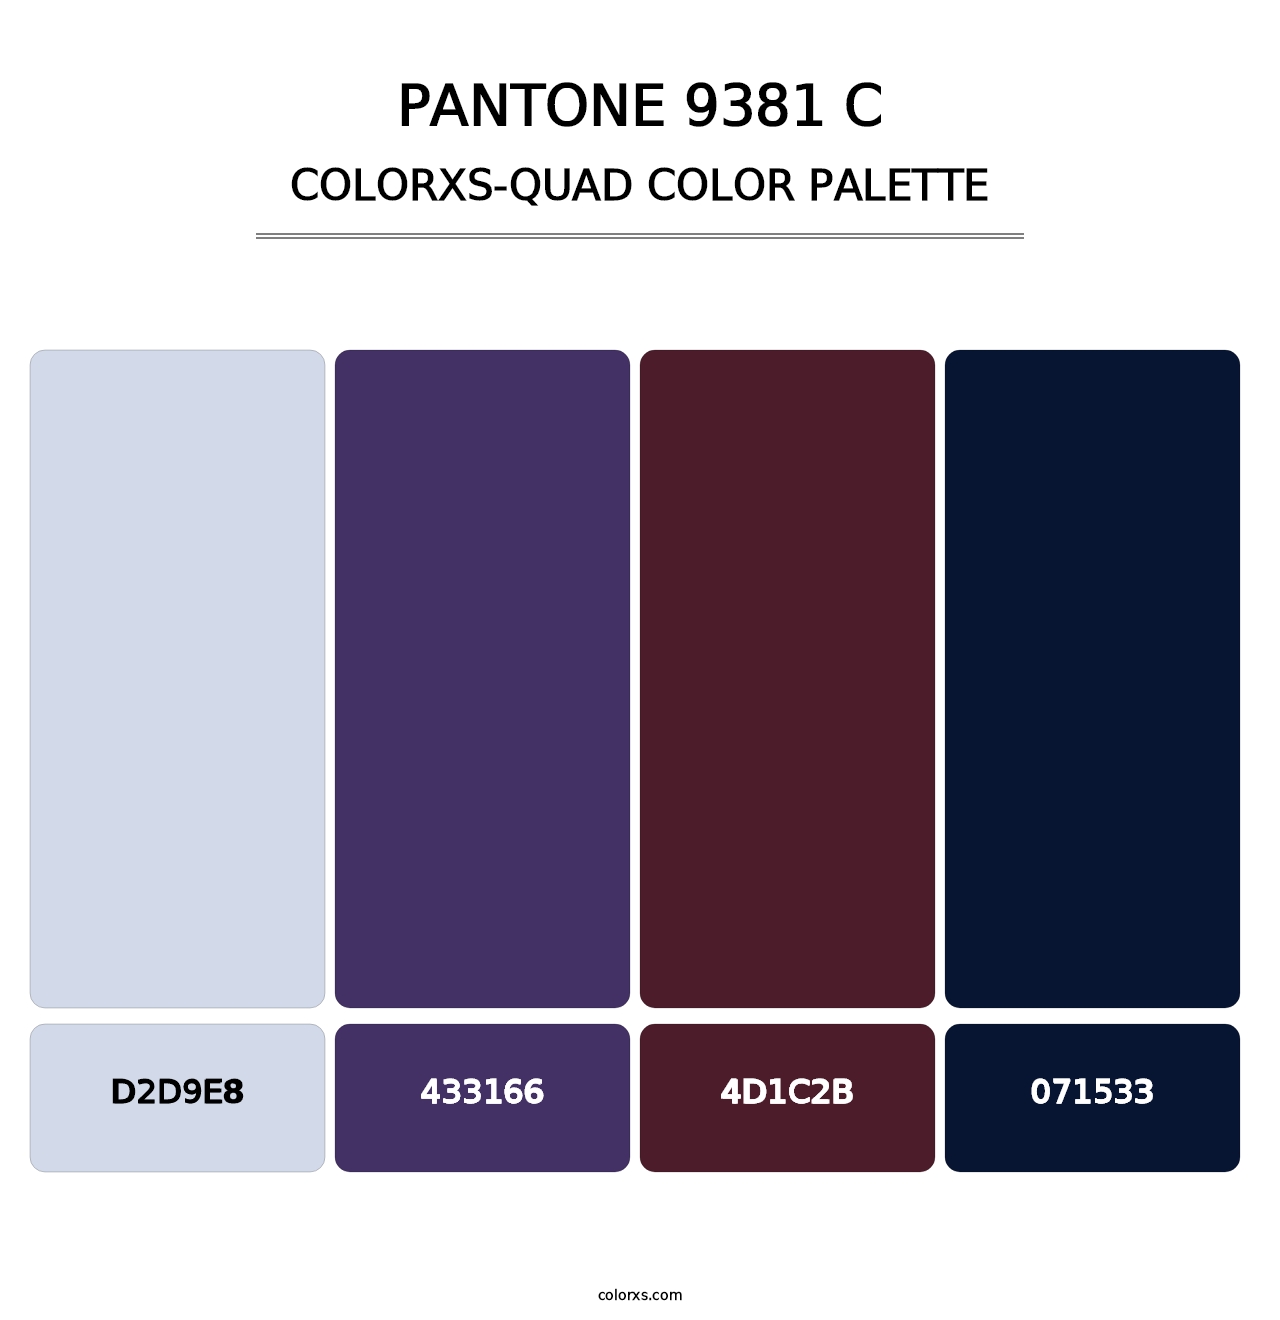 PANTONE 9381 C - Colorxs Quad Palette